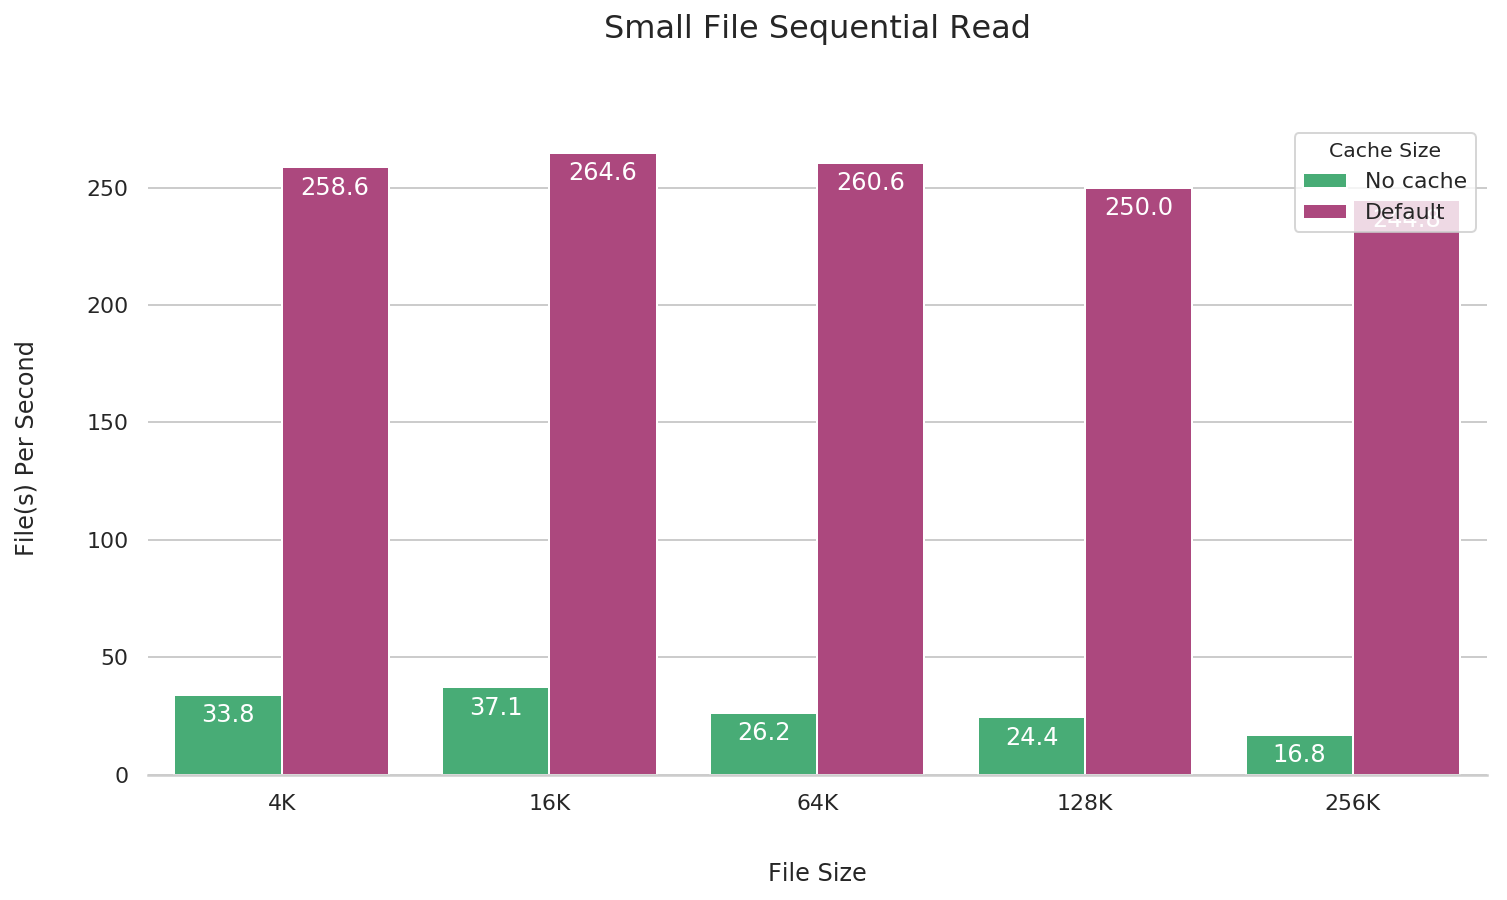 small-file-seq-read-2019